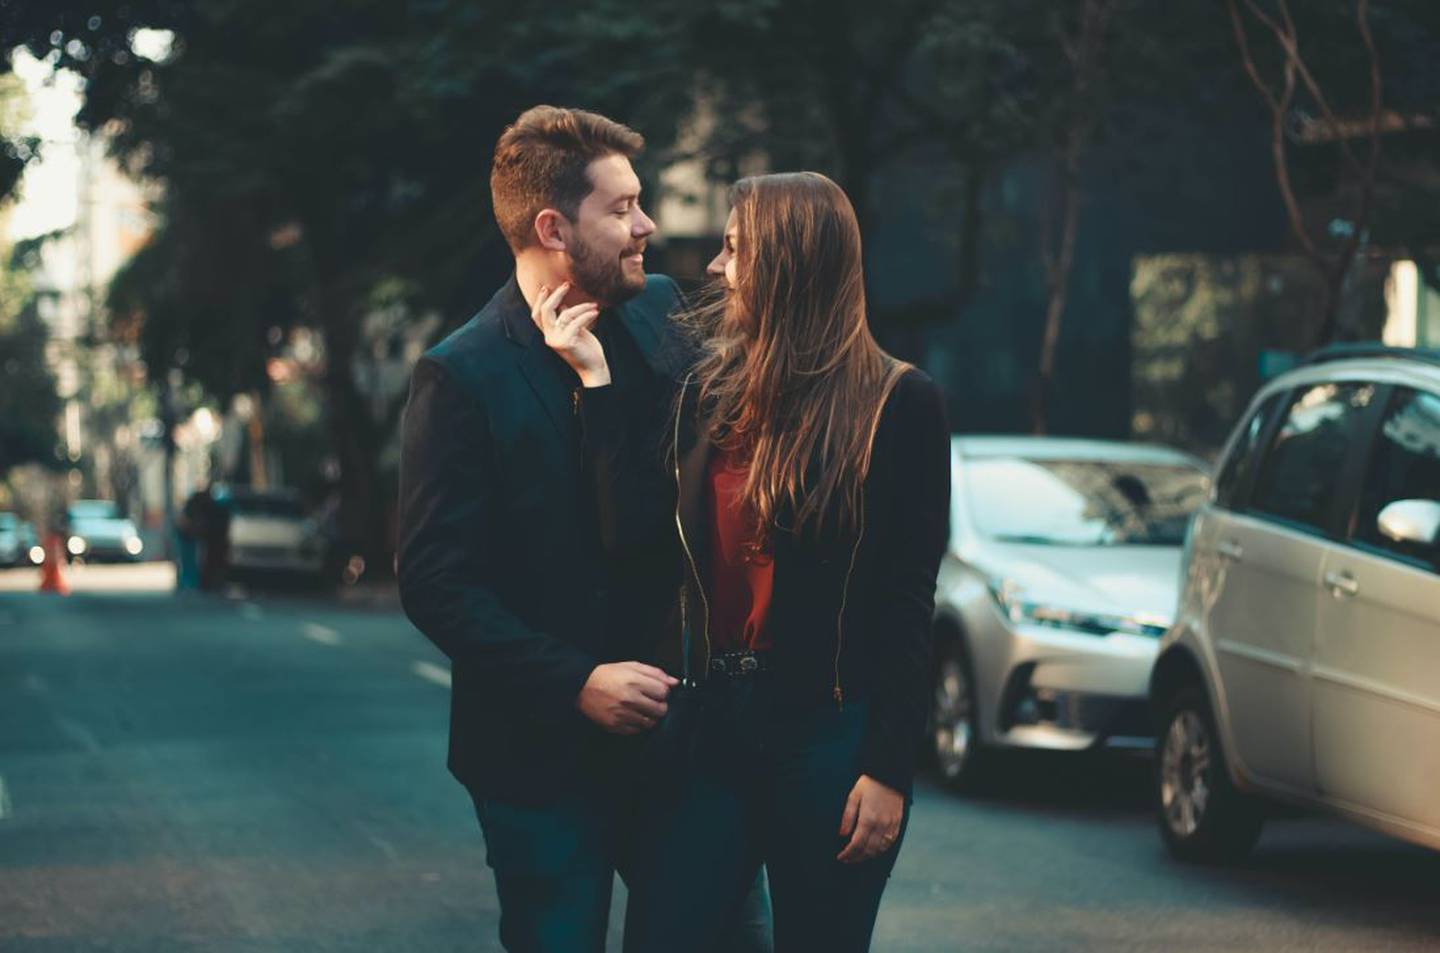 Una pareja enamorada demostrando su amor en público